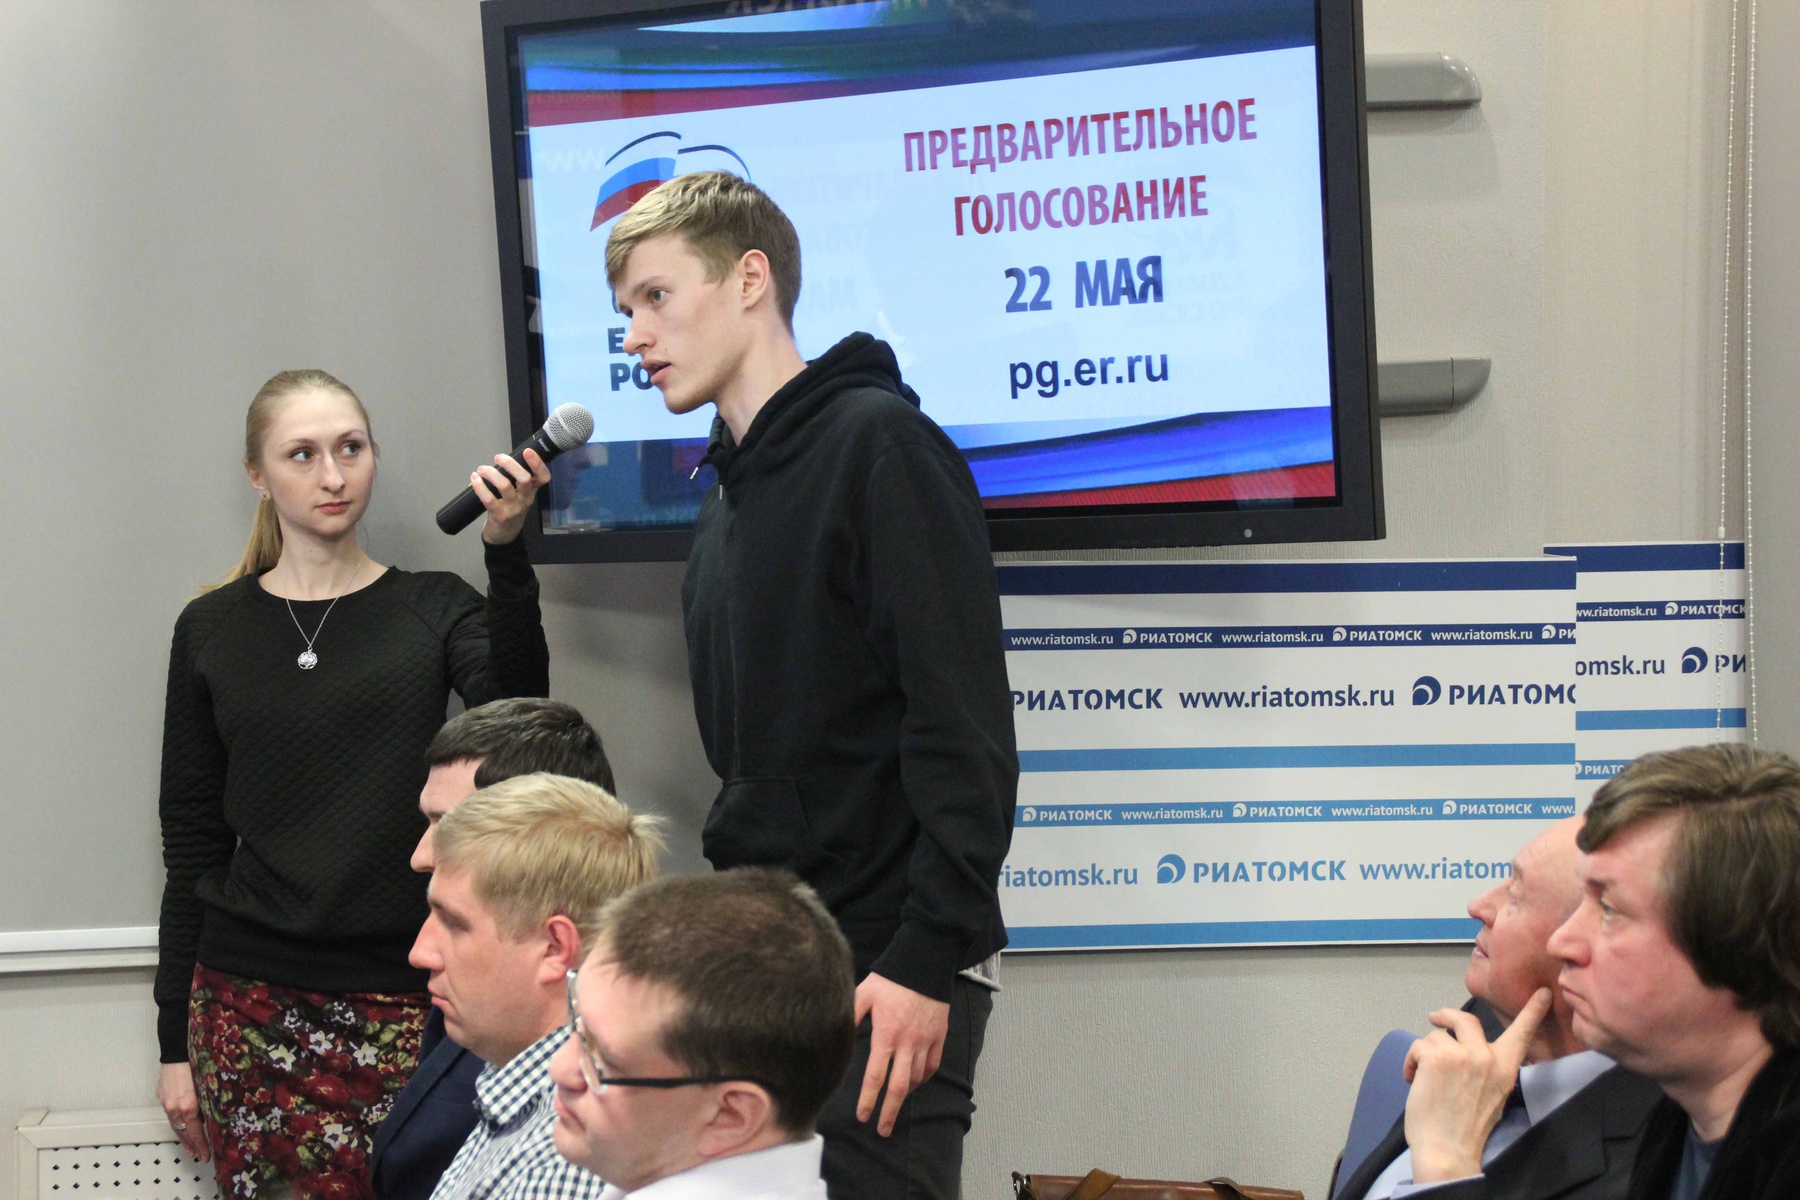    Дебаты участников предварительного голосования в регионах РФ. Томск